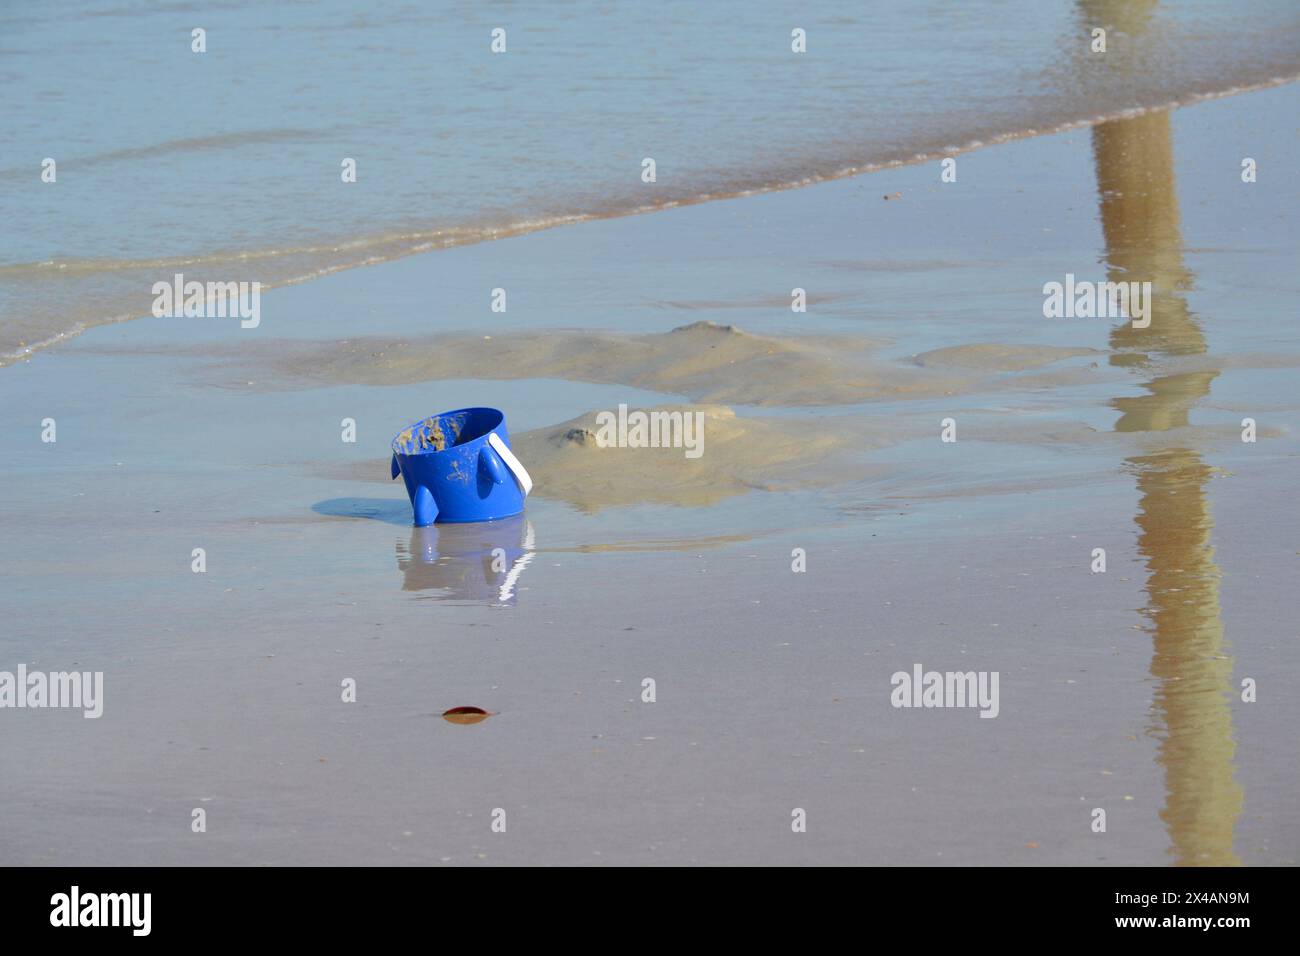 Un secchio blu abbandonato riposa, mezzo sommerso nella sabbia vicino al bordo dell'oceano, mentre le onde si innalzano, creando riflessi sulla sabbia delle spiagge. Foto Stock